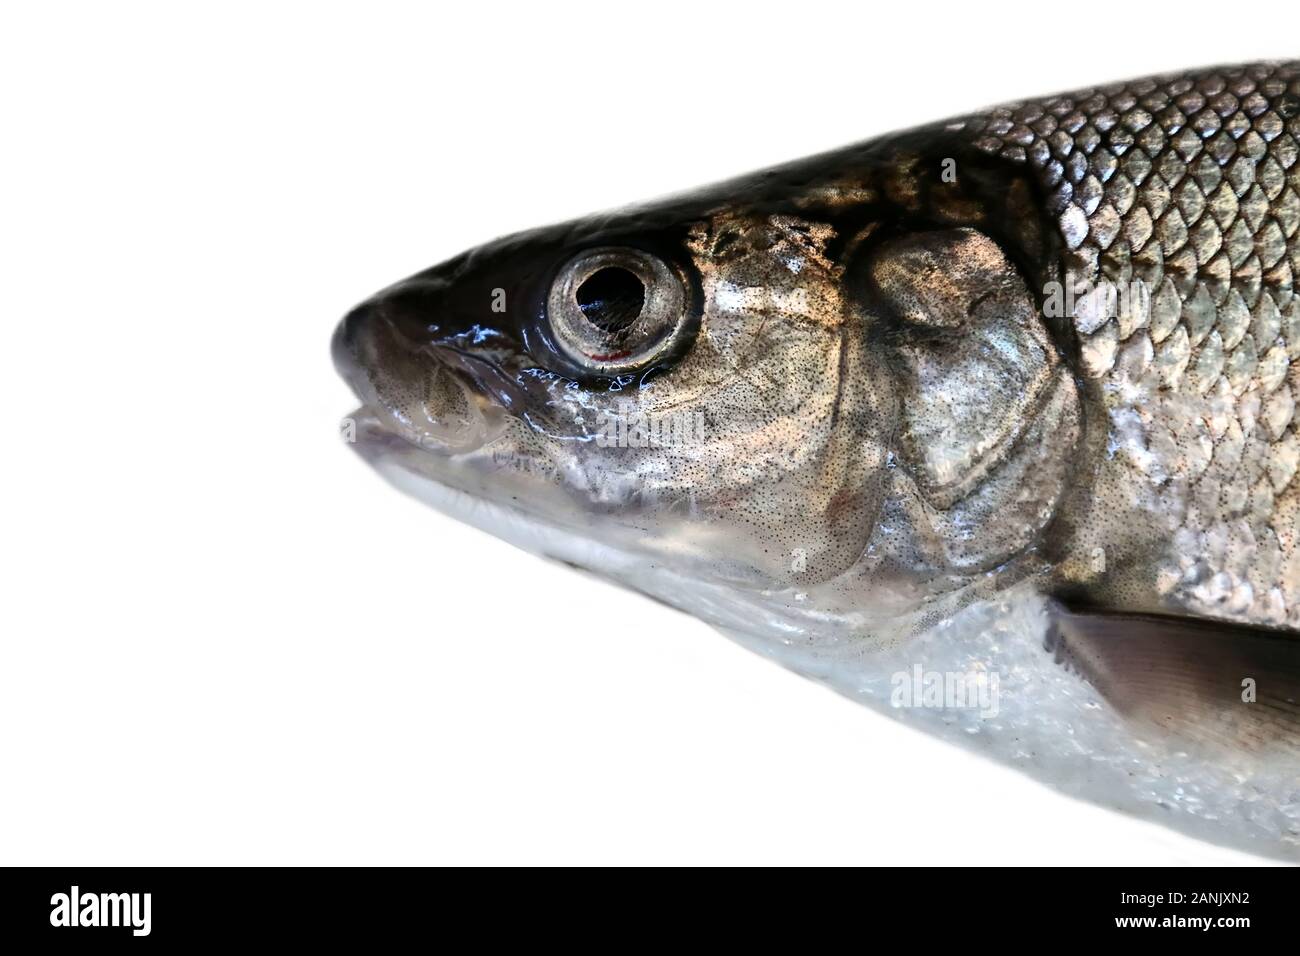 Portrait de tête de poisson. Grand corégone (Coregonus lavaretus) - espèces de poissons très polymorphe. Formulaire à partir de la partie est du golfe de Finlande, mer Baltique. Isolées de poissons Banque D'Images